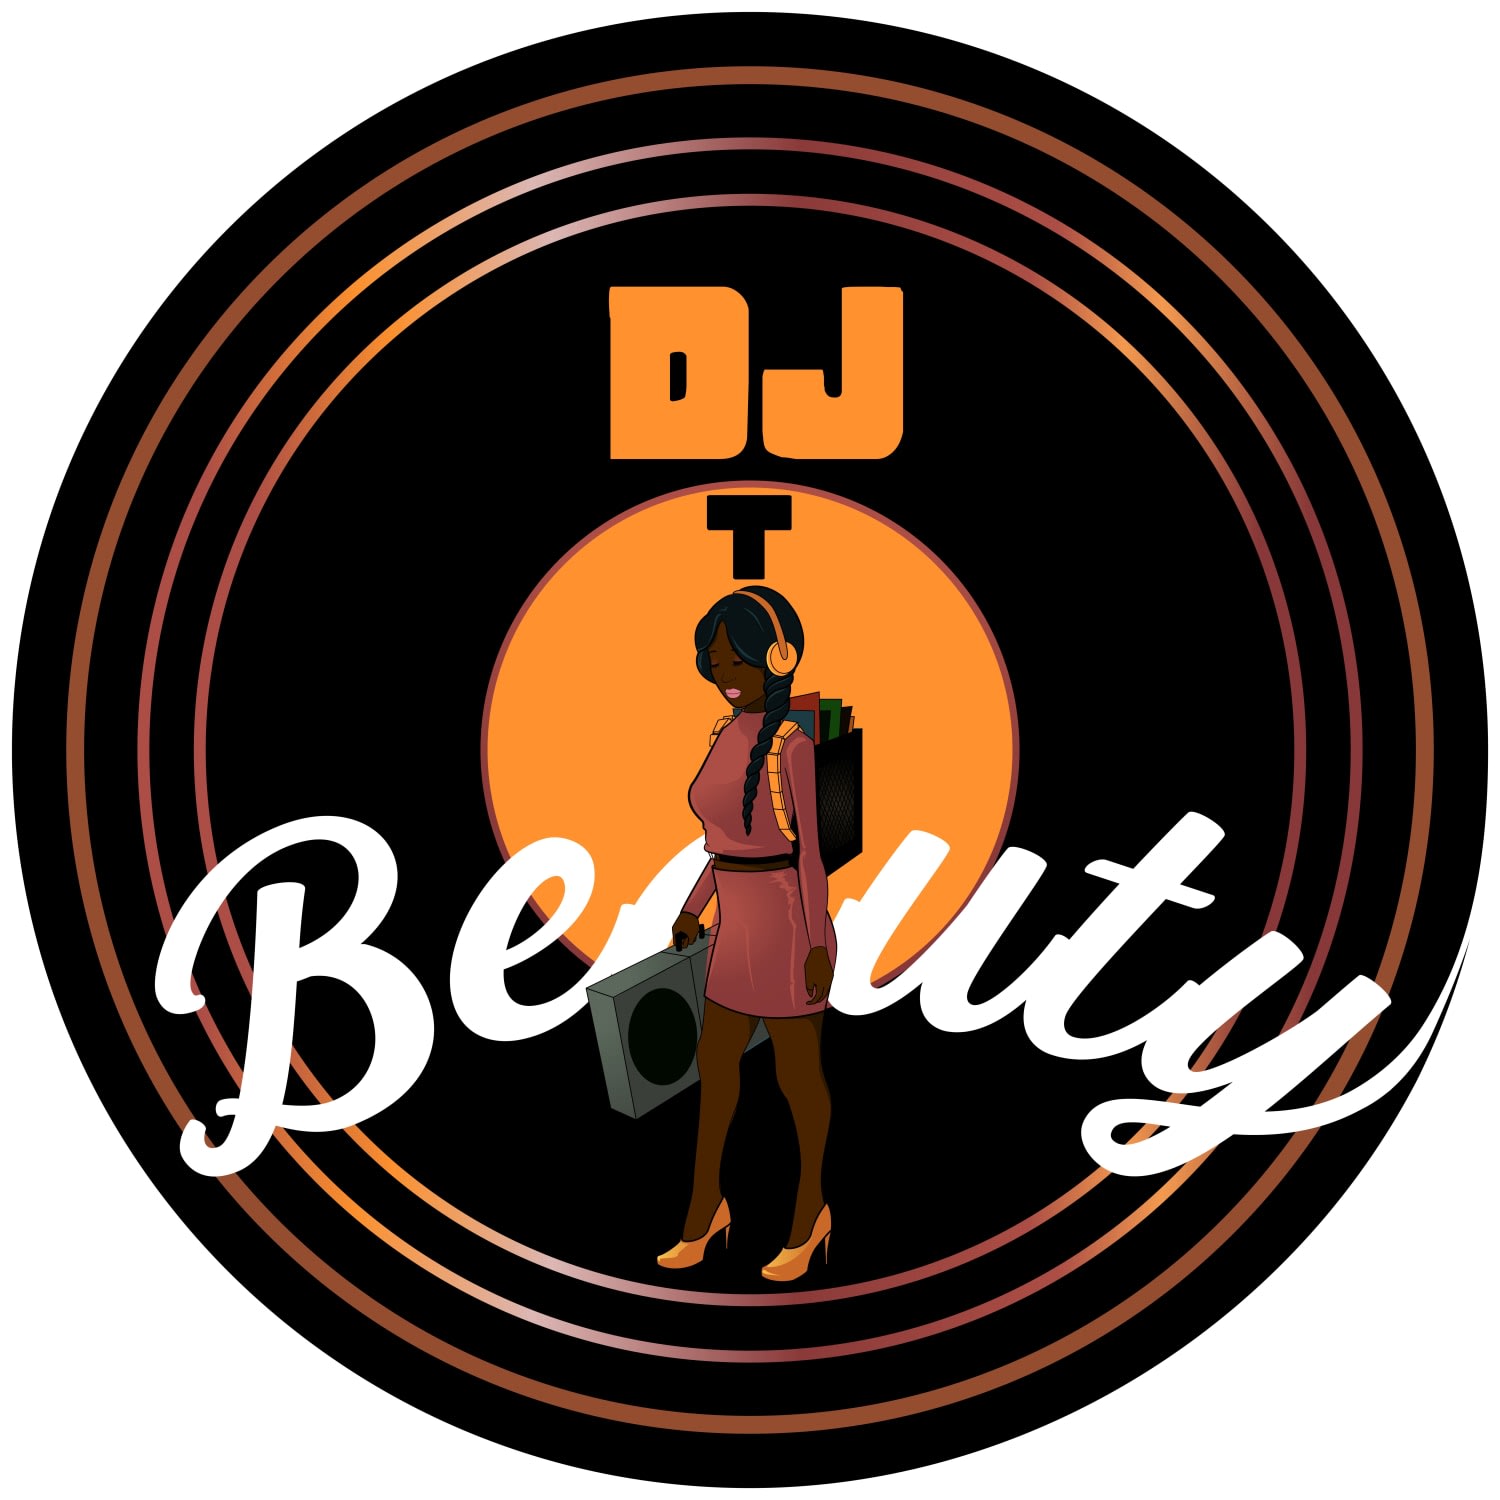 DJ T Beauty